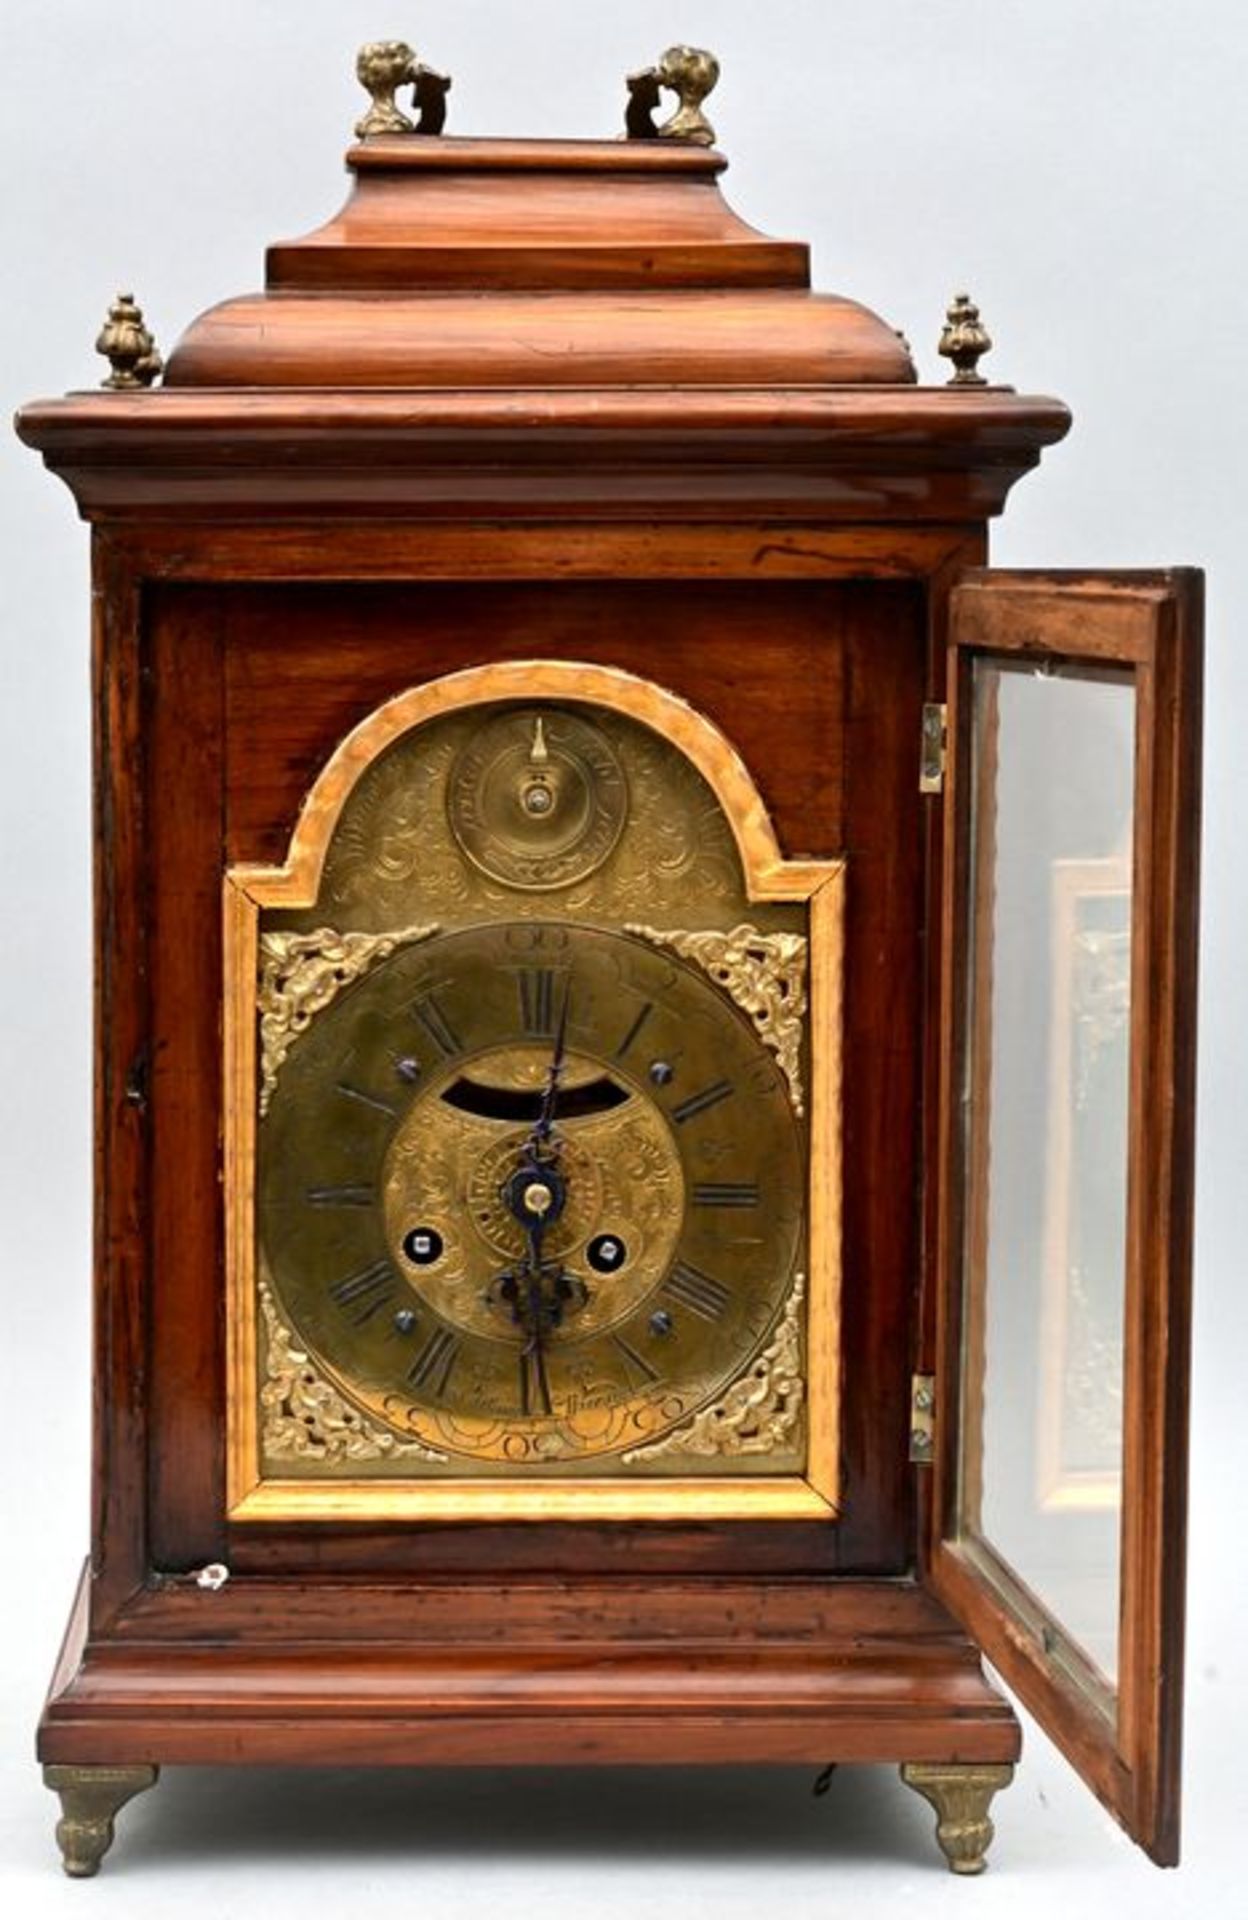 332 Stutzuhr, braun, Holz/ bracket clock